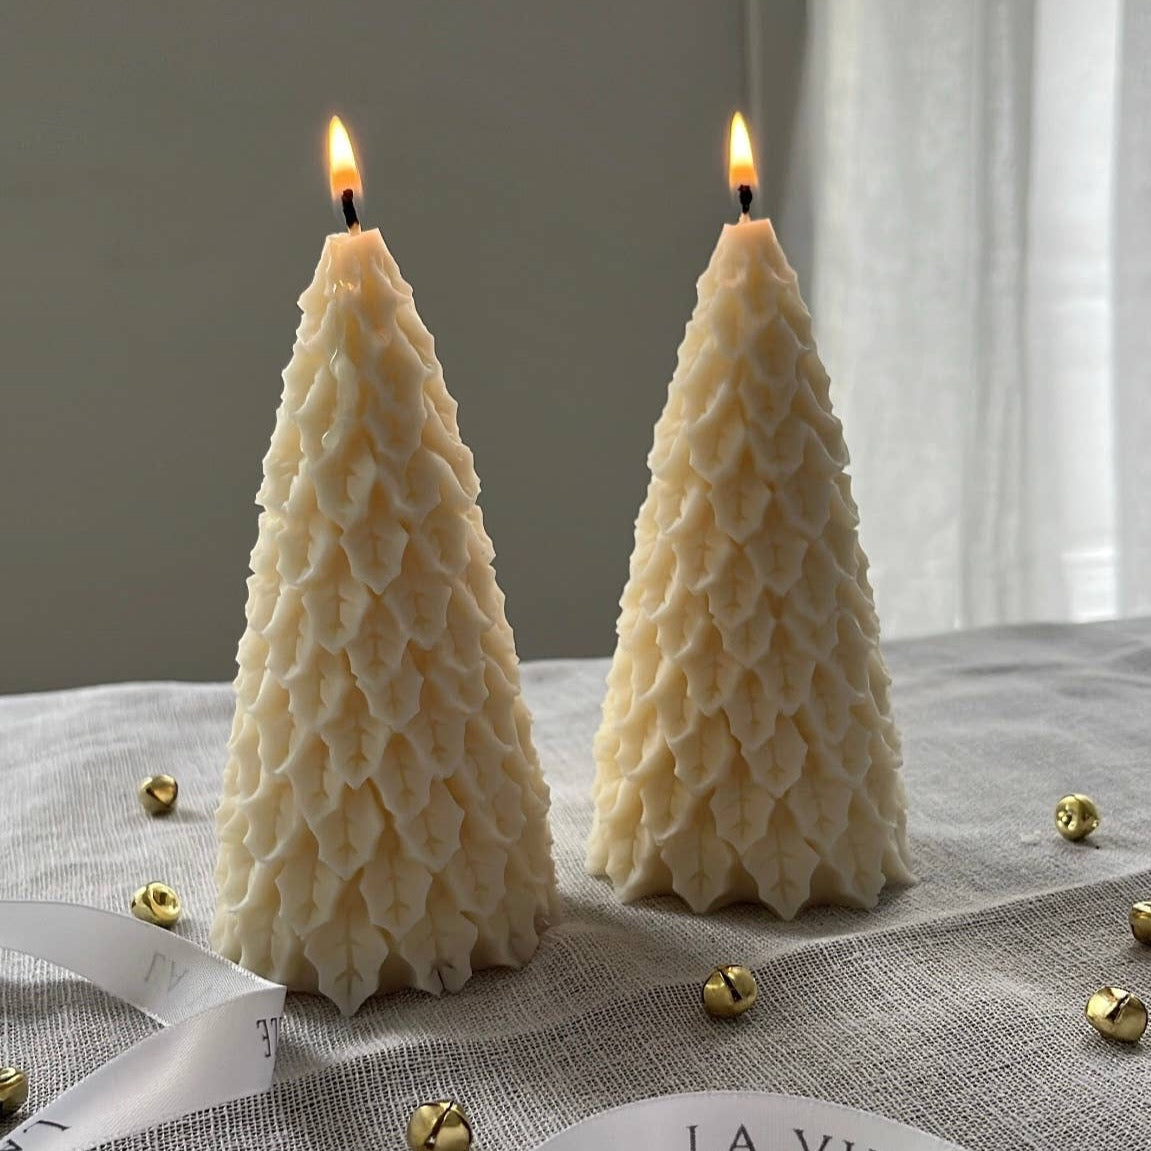 Christmas Tree Candle: Citrus by La vie & Belle